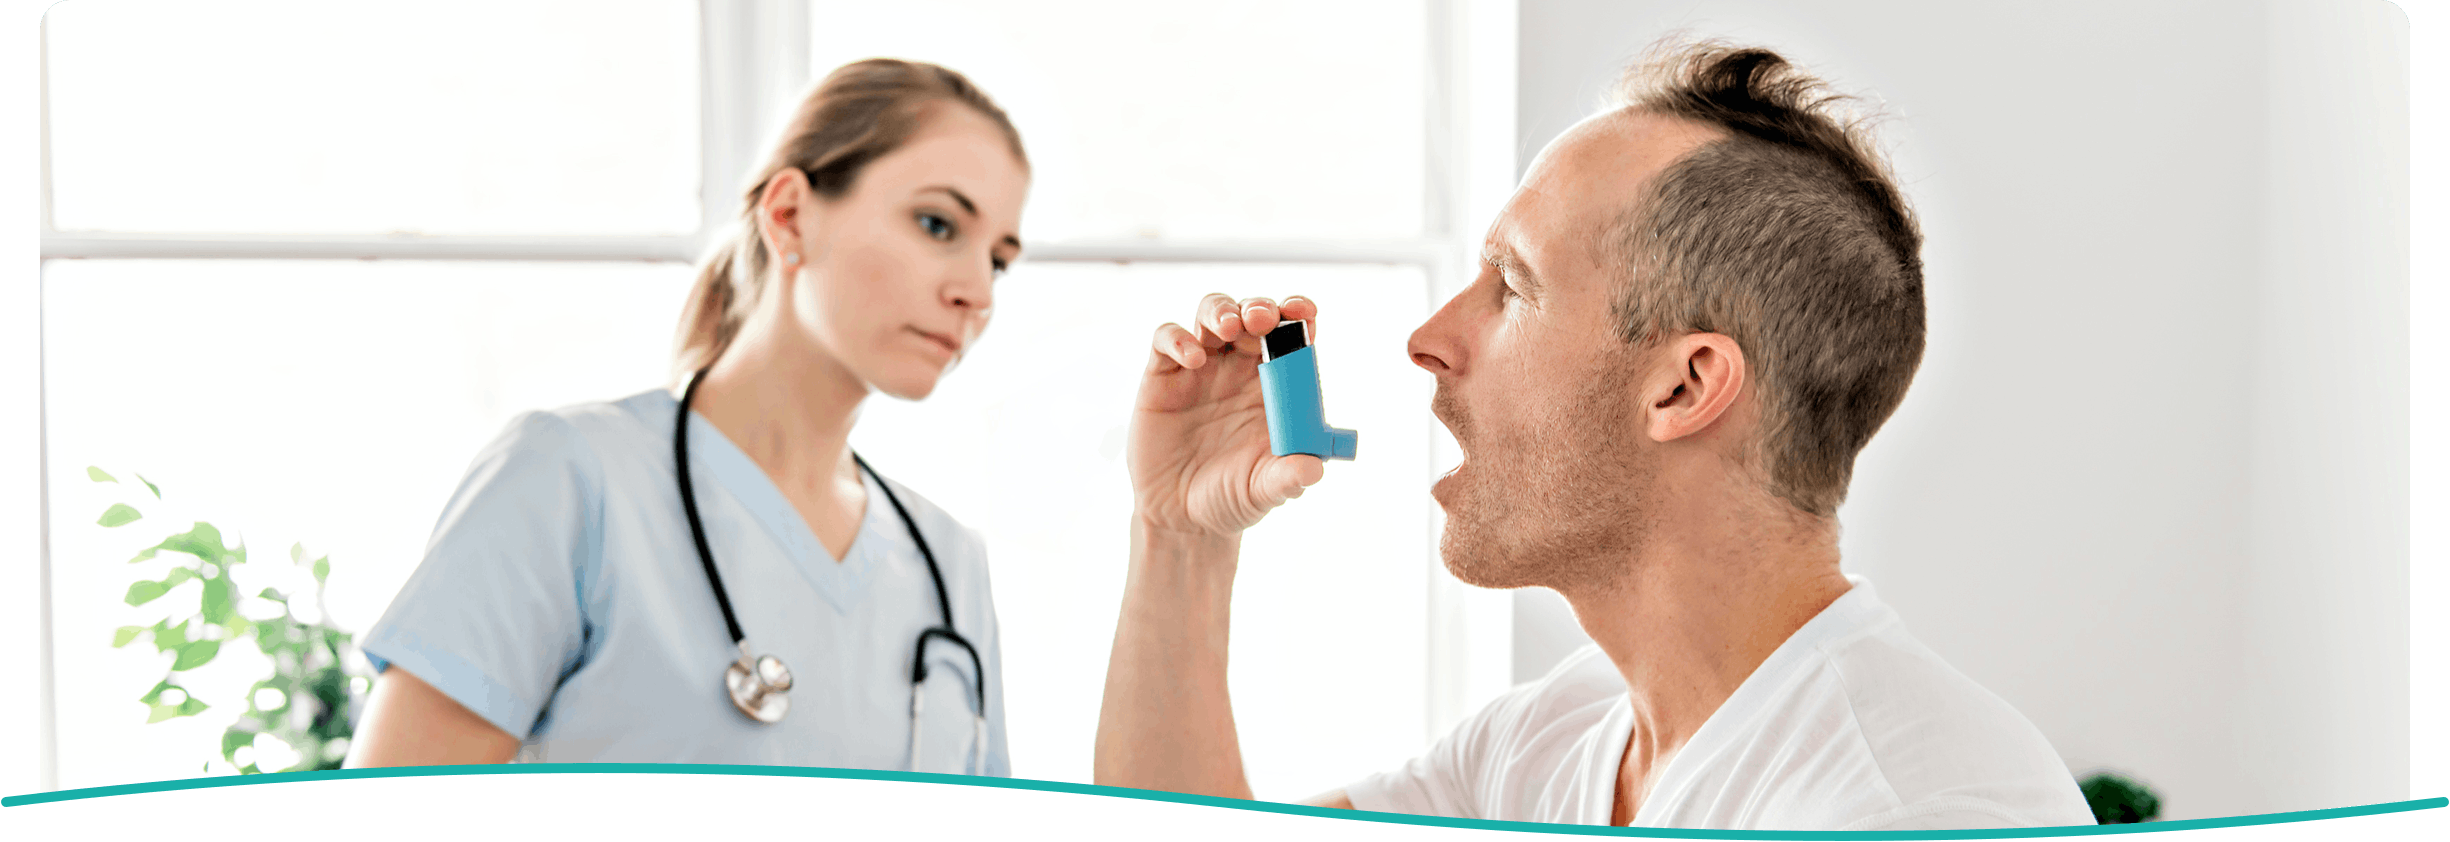 Asthma Medication Information